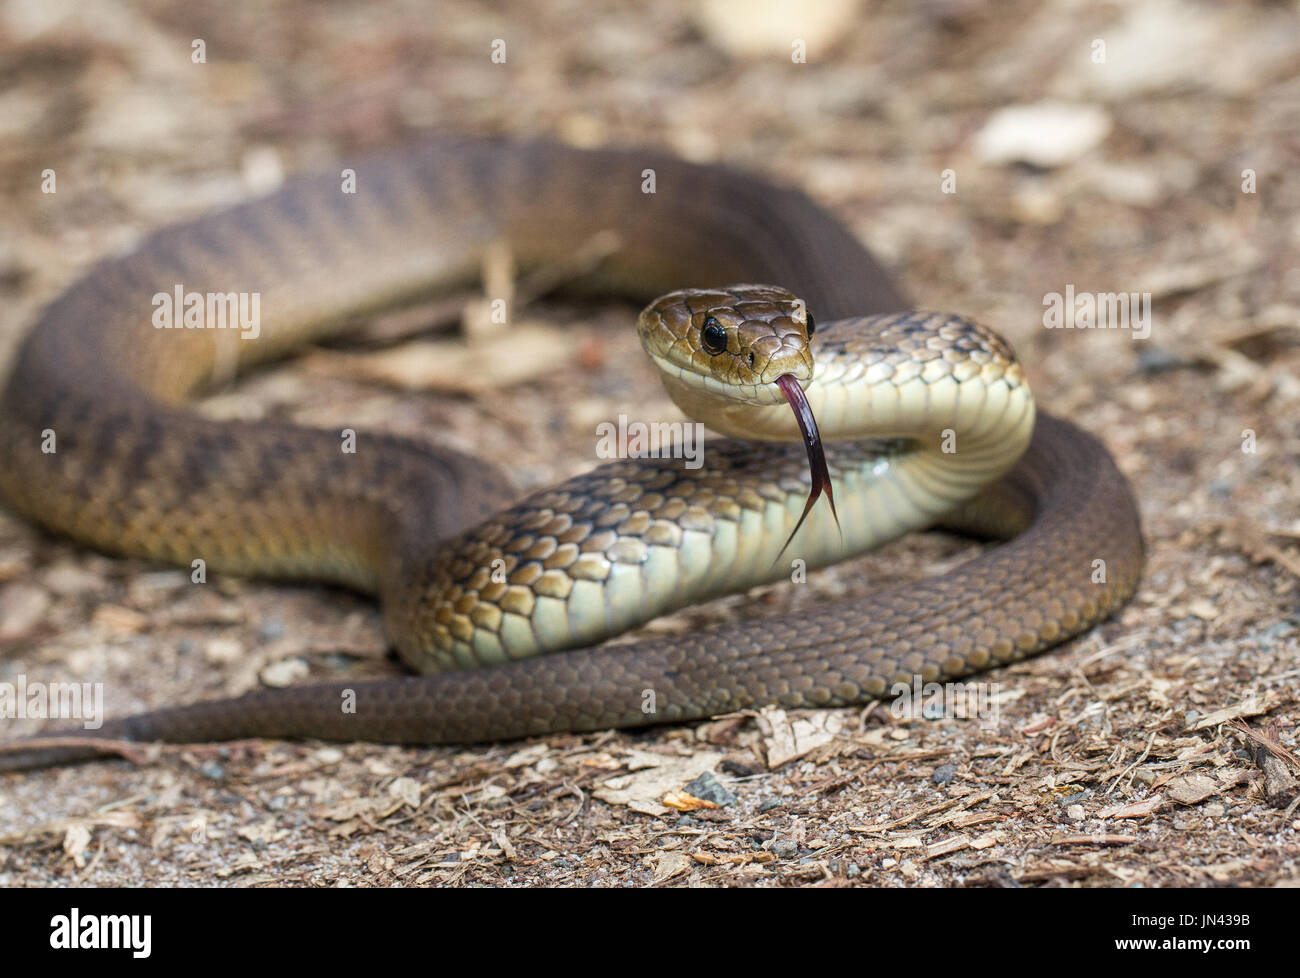 Rough-scaled Snake Stock Photo